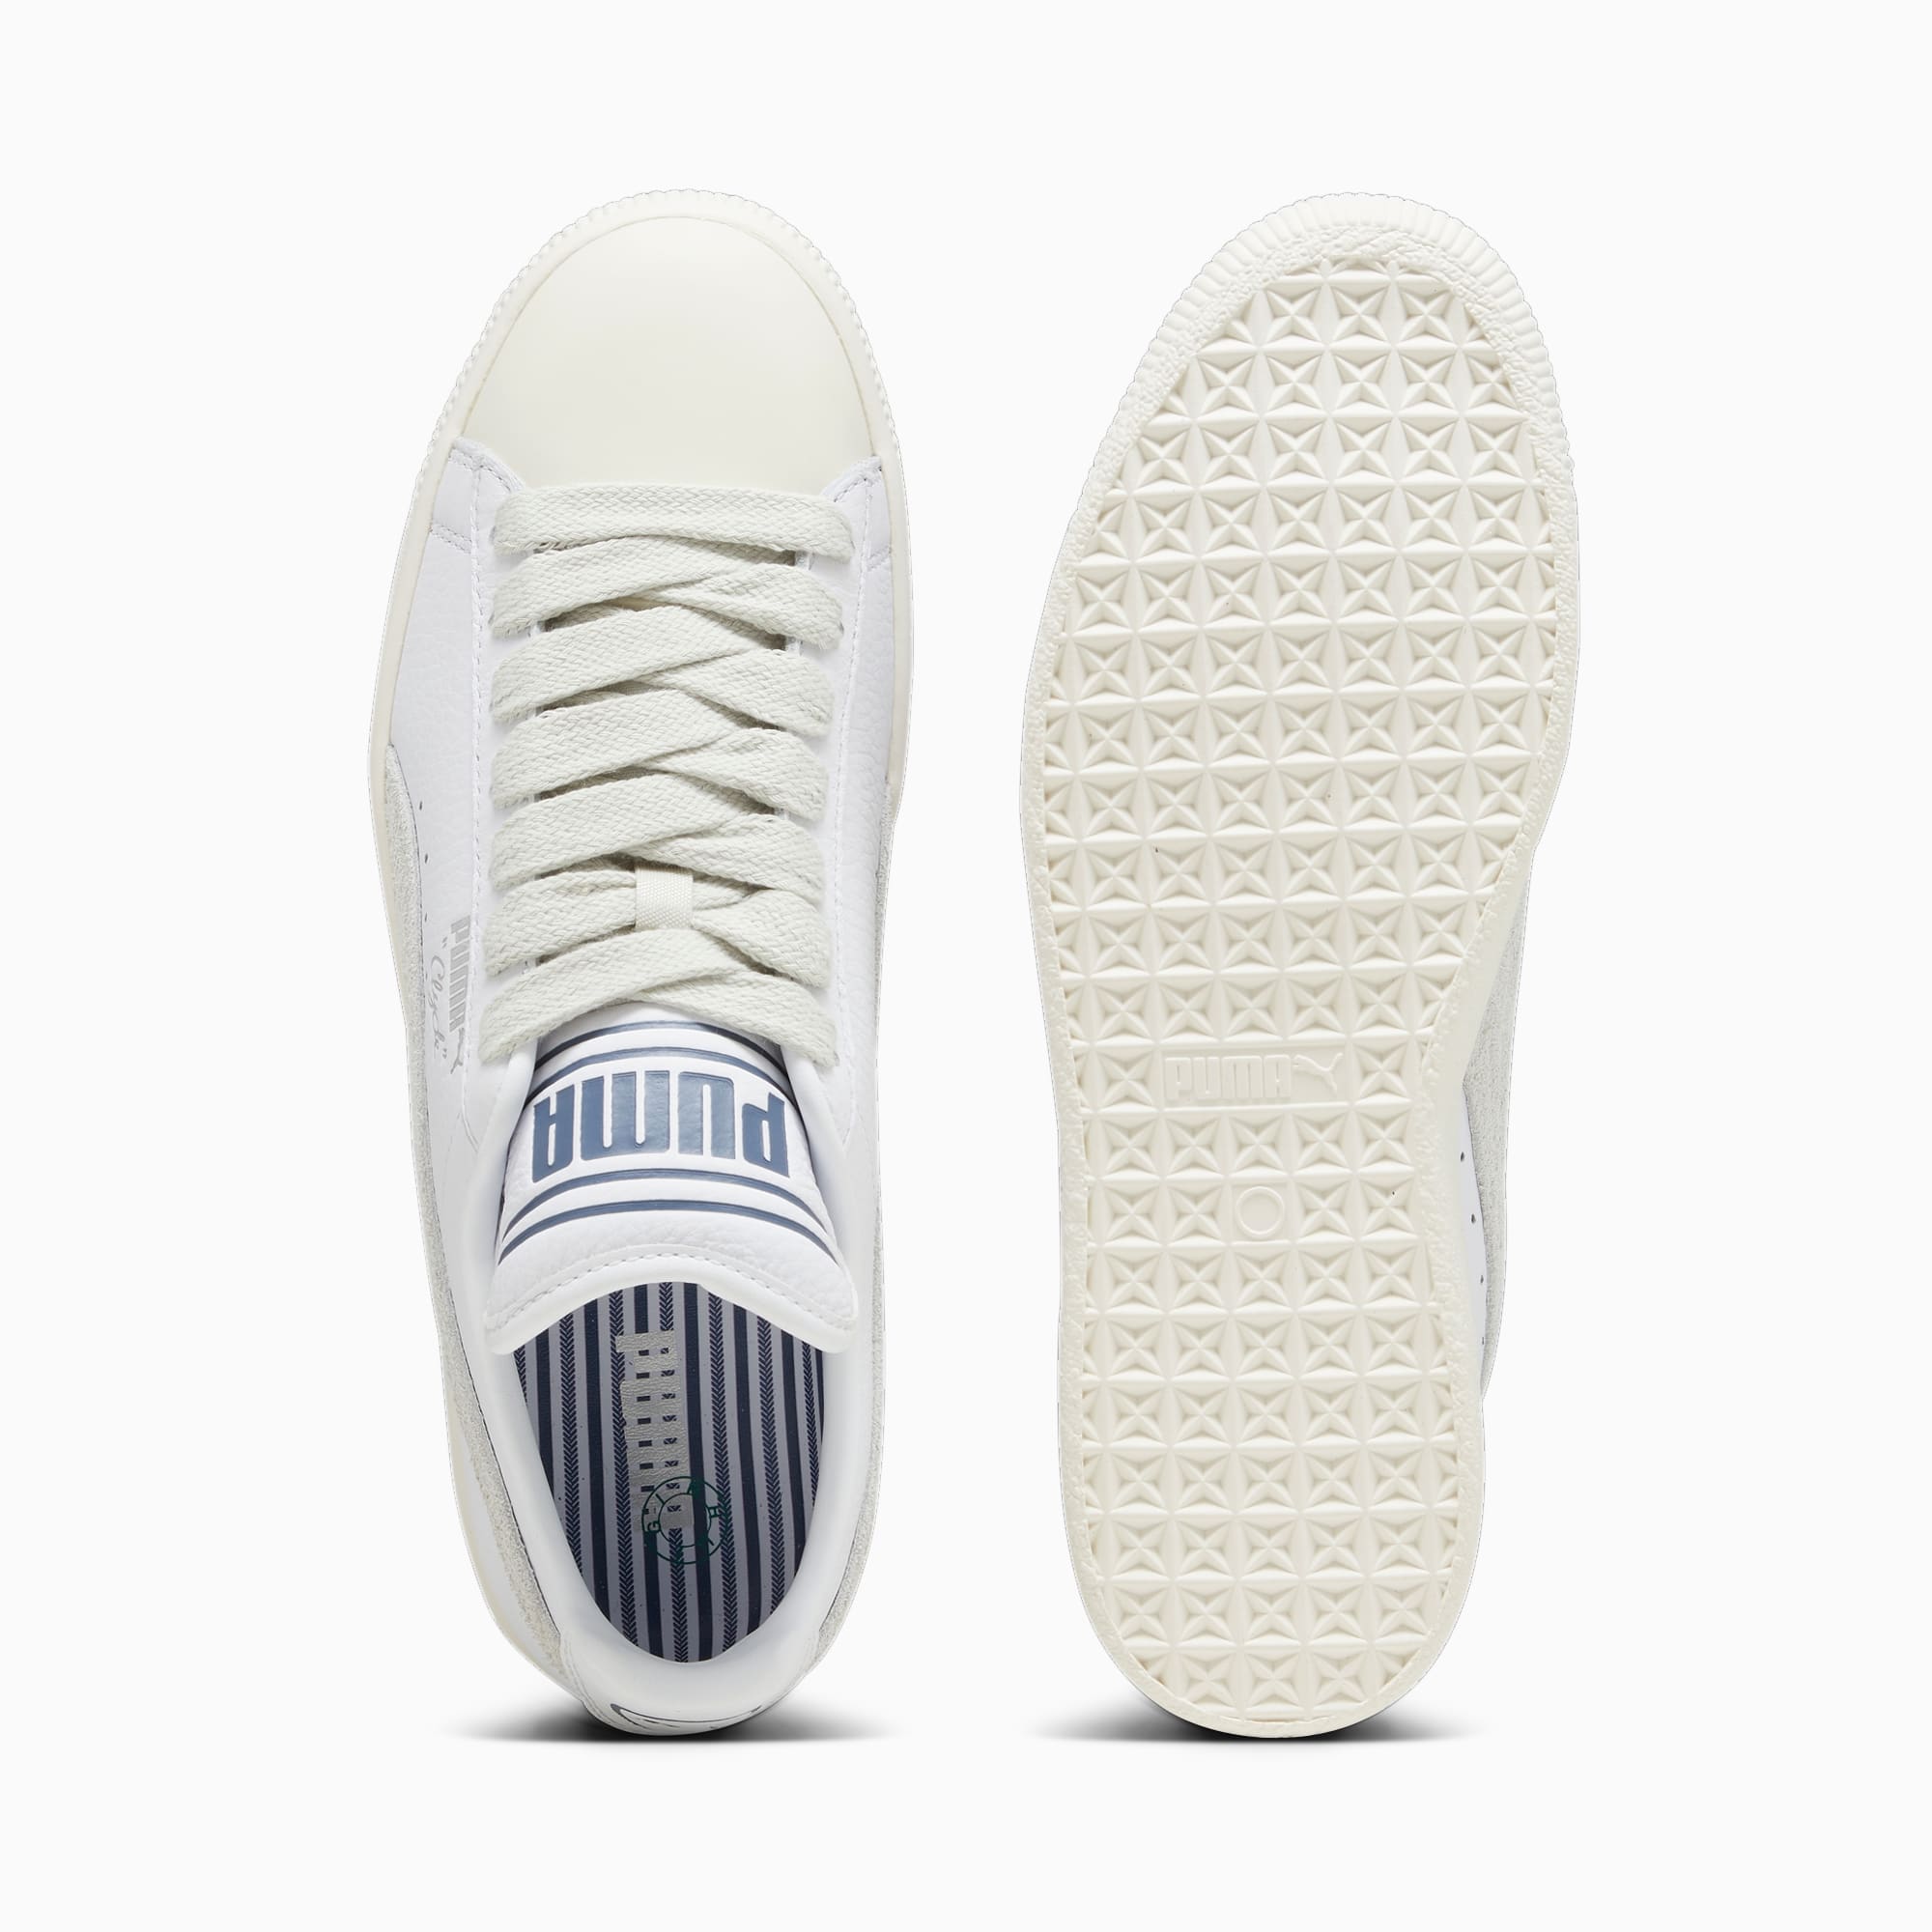 Chaussure Sneakers Clyde PUMA X Rhuigi Pour Homme, Blanc/Gris